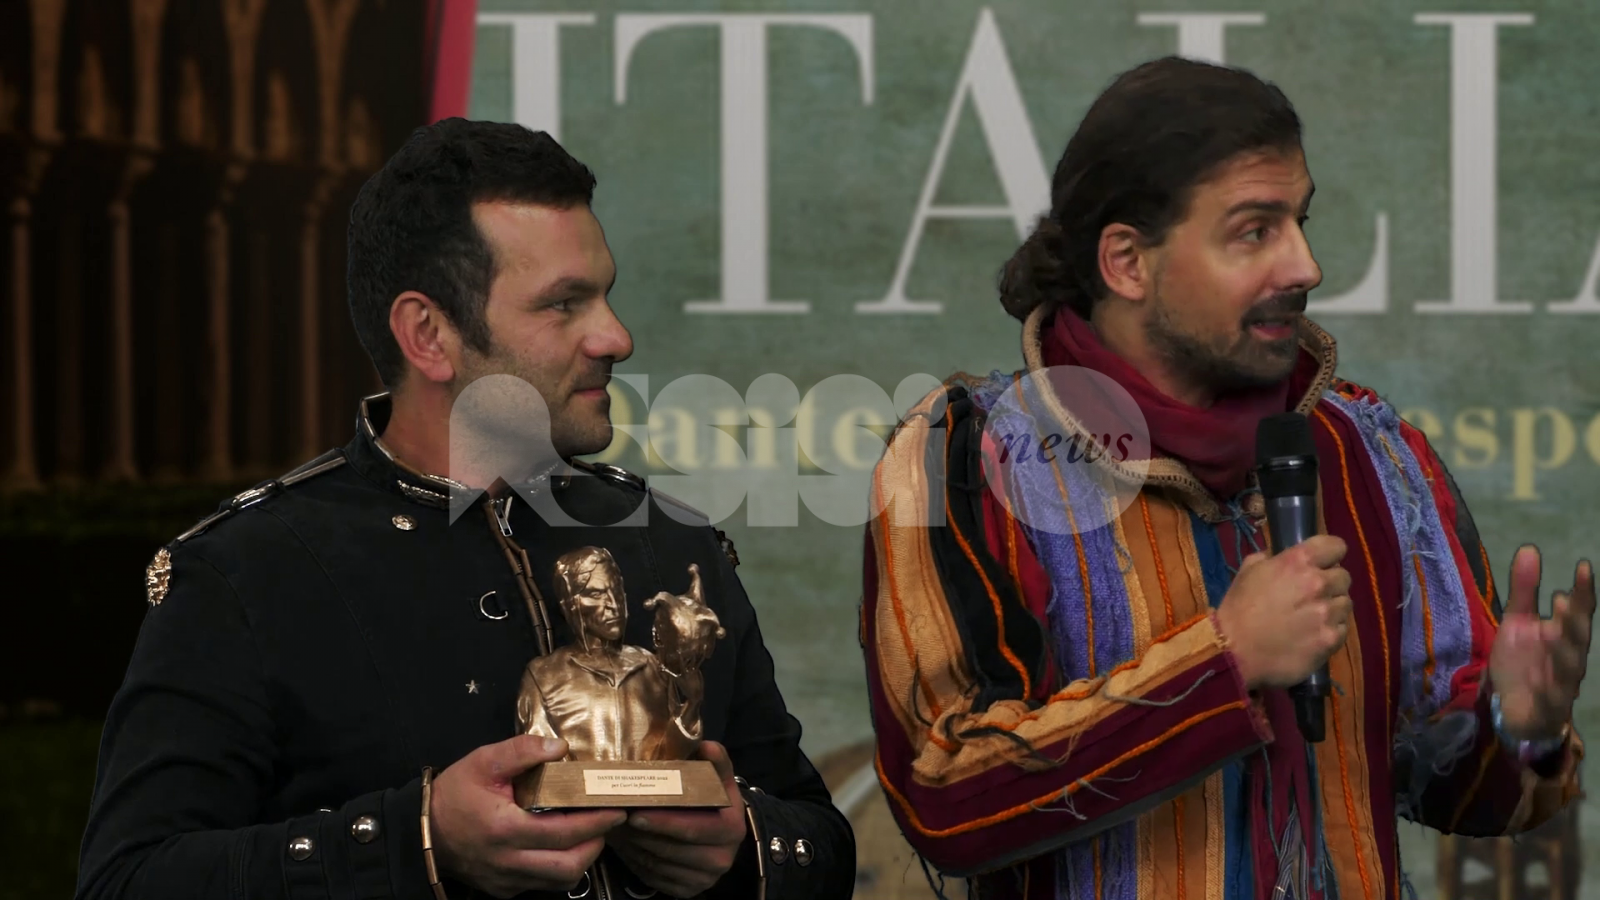 Stefano Venarucci e Sascia B premiati a Roma per Ahi, serva Italia! – Dante di Shakespeare (foto)